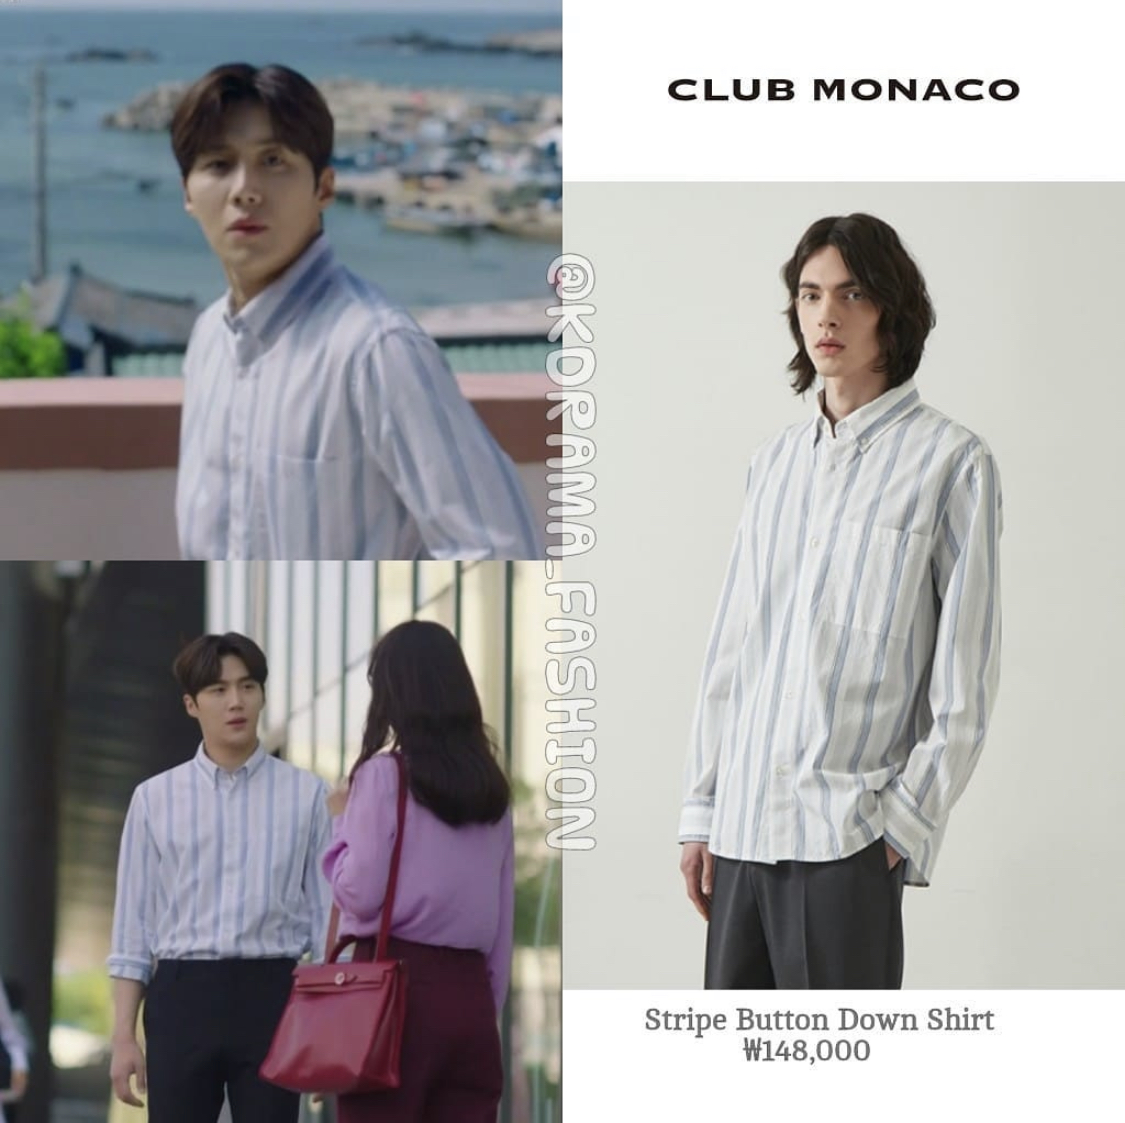 Đôi khi, 'trai làng biển' Doo Shik lại 'đổi gió' diện áo sơmi kẻ sọc dọc đơn giản và lịch sự cùng quần vải đen. Chiếc áo này là một thiết kế của thương hiệu Club Monaco có giá 'sương sương' khoảng gần 3 triệu đồng.